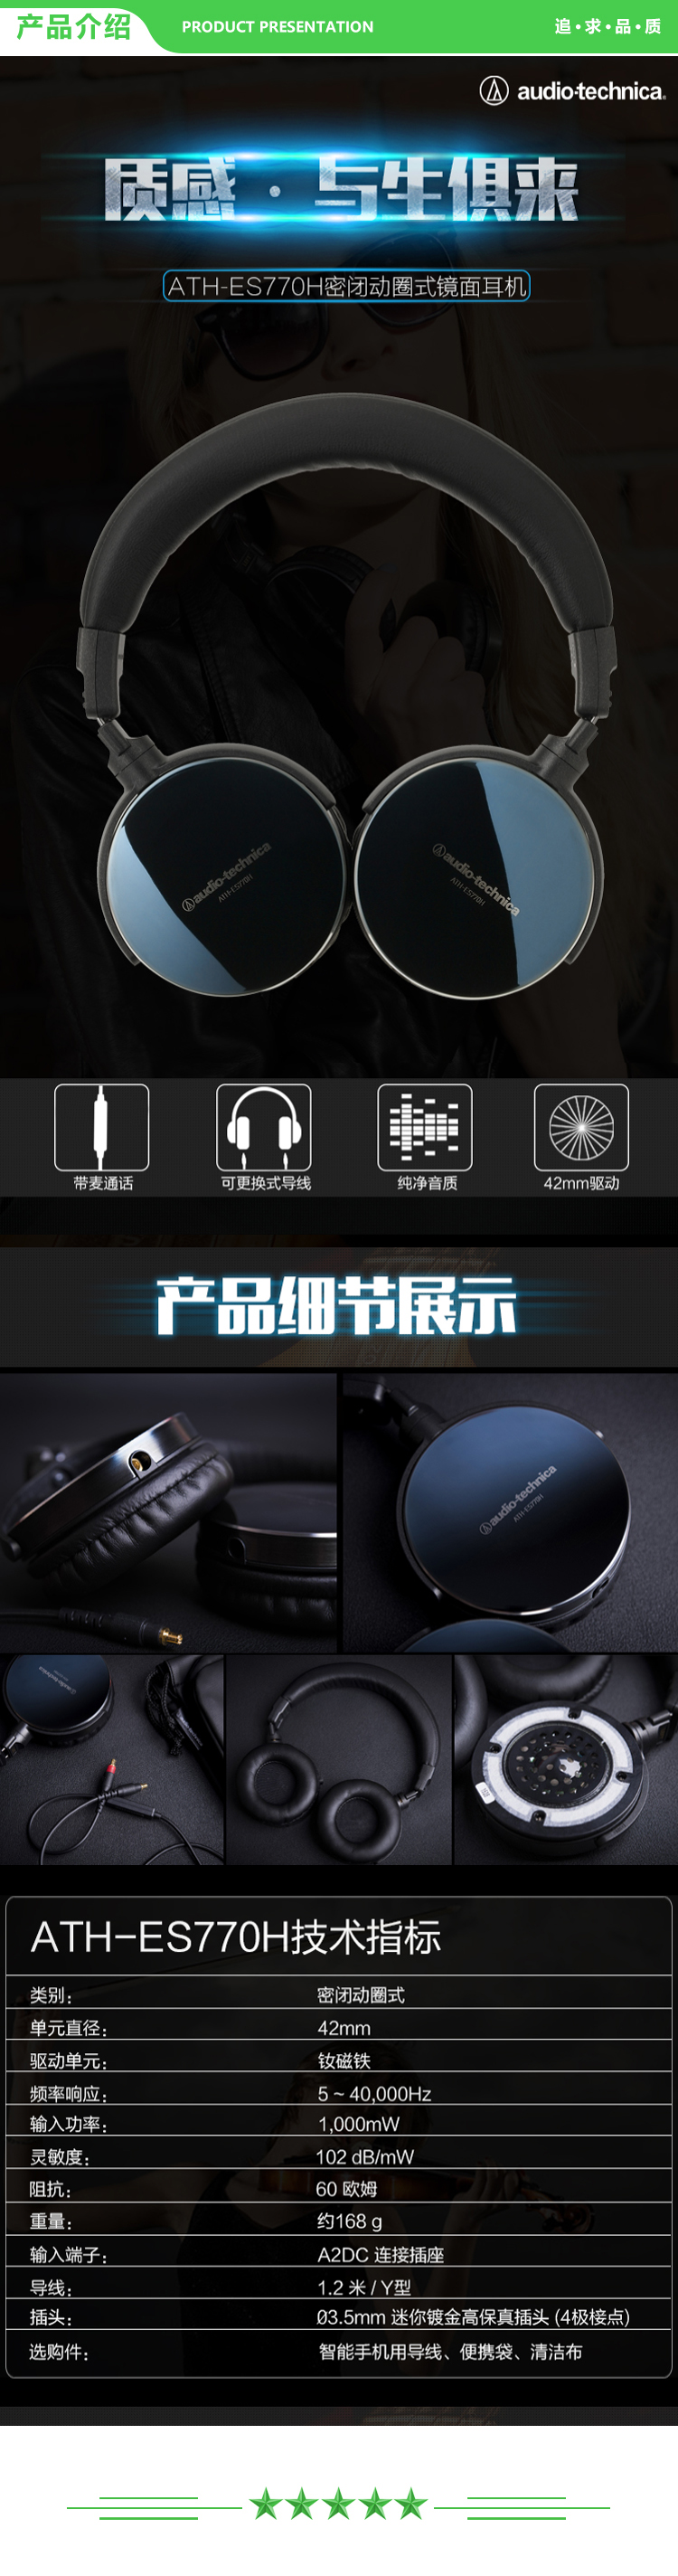 铁三角 Audio-technica ES770H 便携式头戴镜面音乐耳机 手机耳机 HIFI耳机 HiFi 高保真 可折叠 .jpg